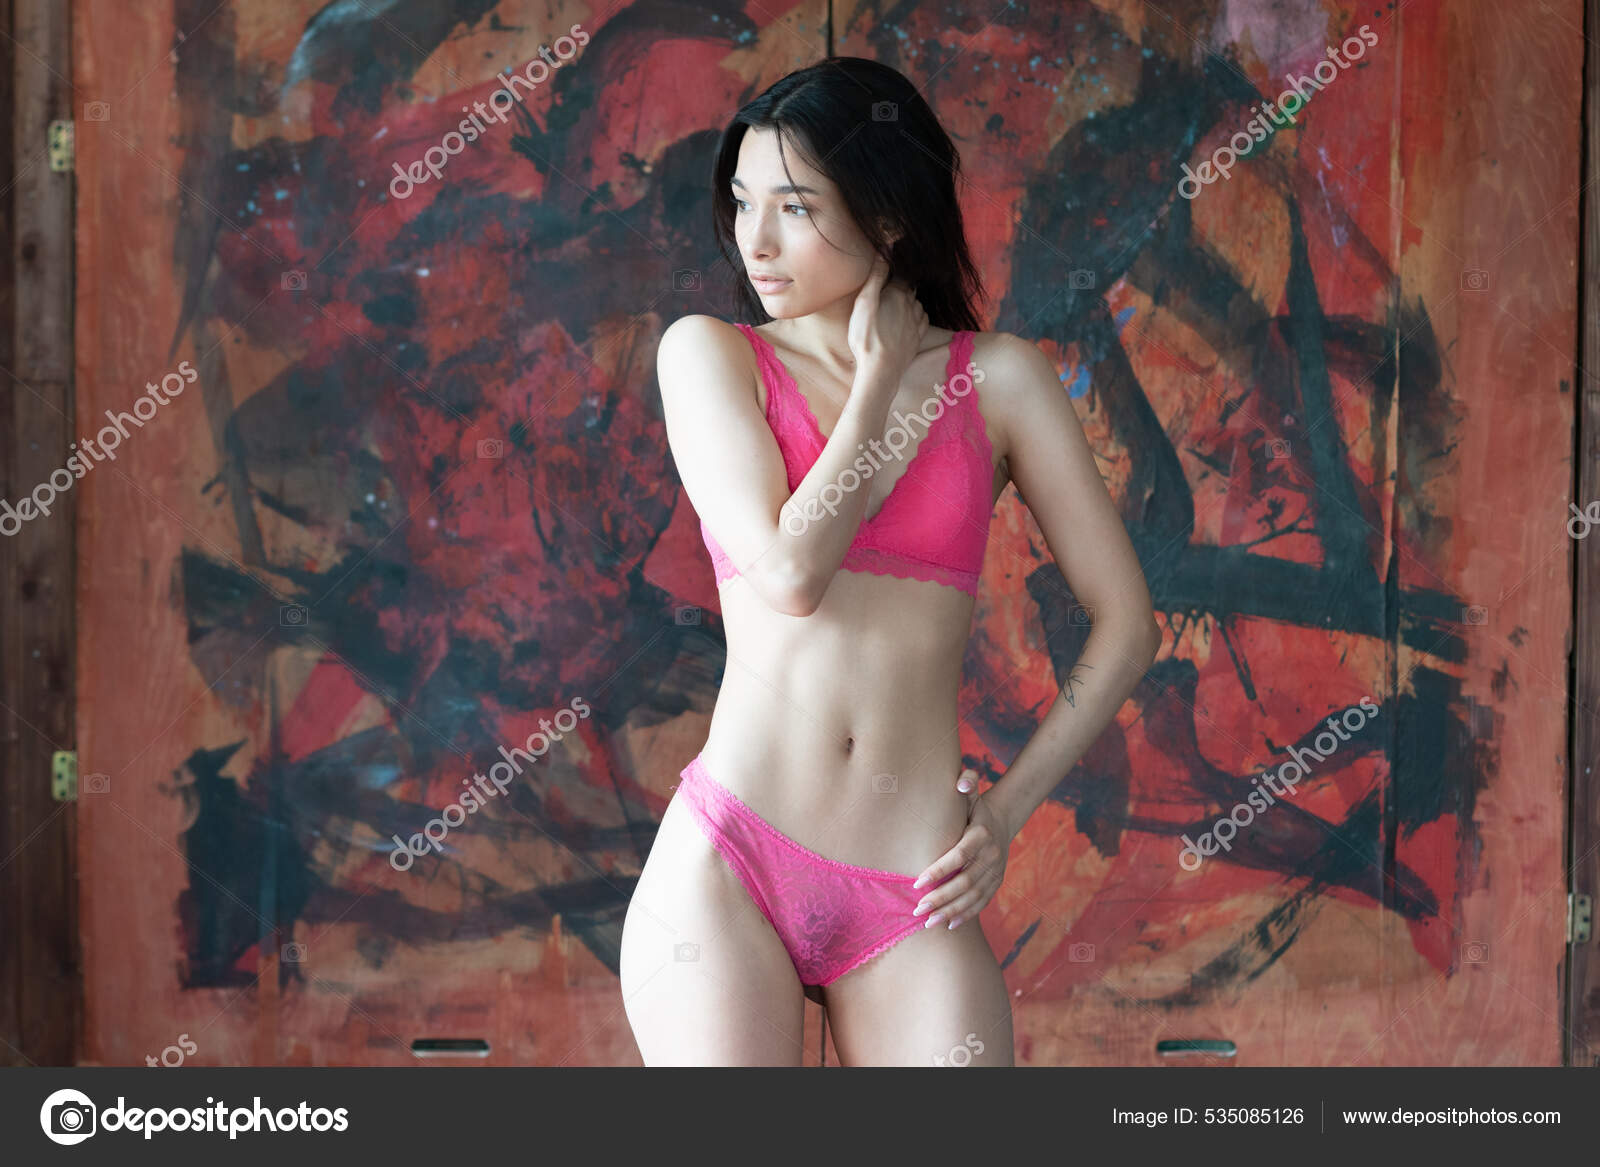 https://st.depositphotos.com/10086424/53508/i/1600/depositphotos_535085126-stock-photo-young-beautiful-woman-posing-red.jpg